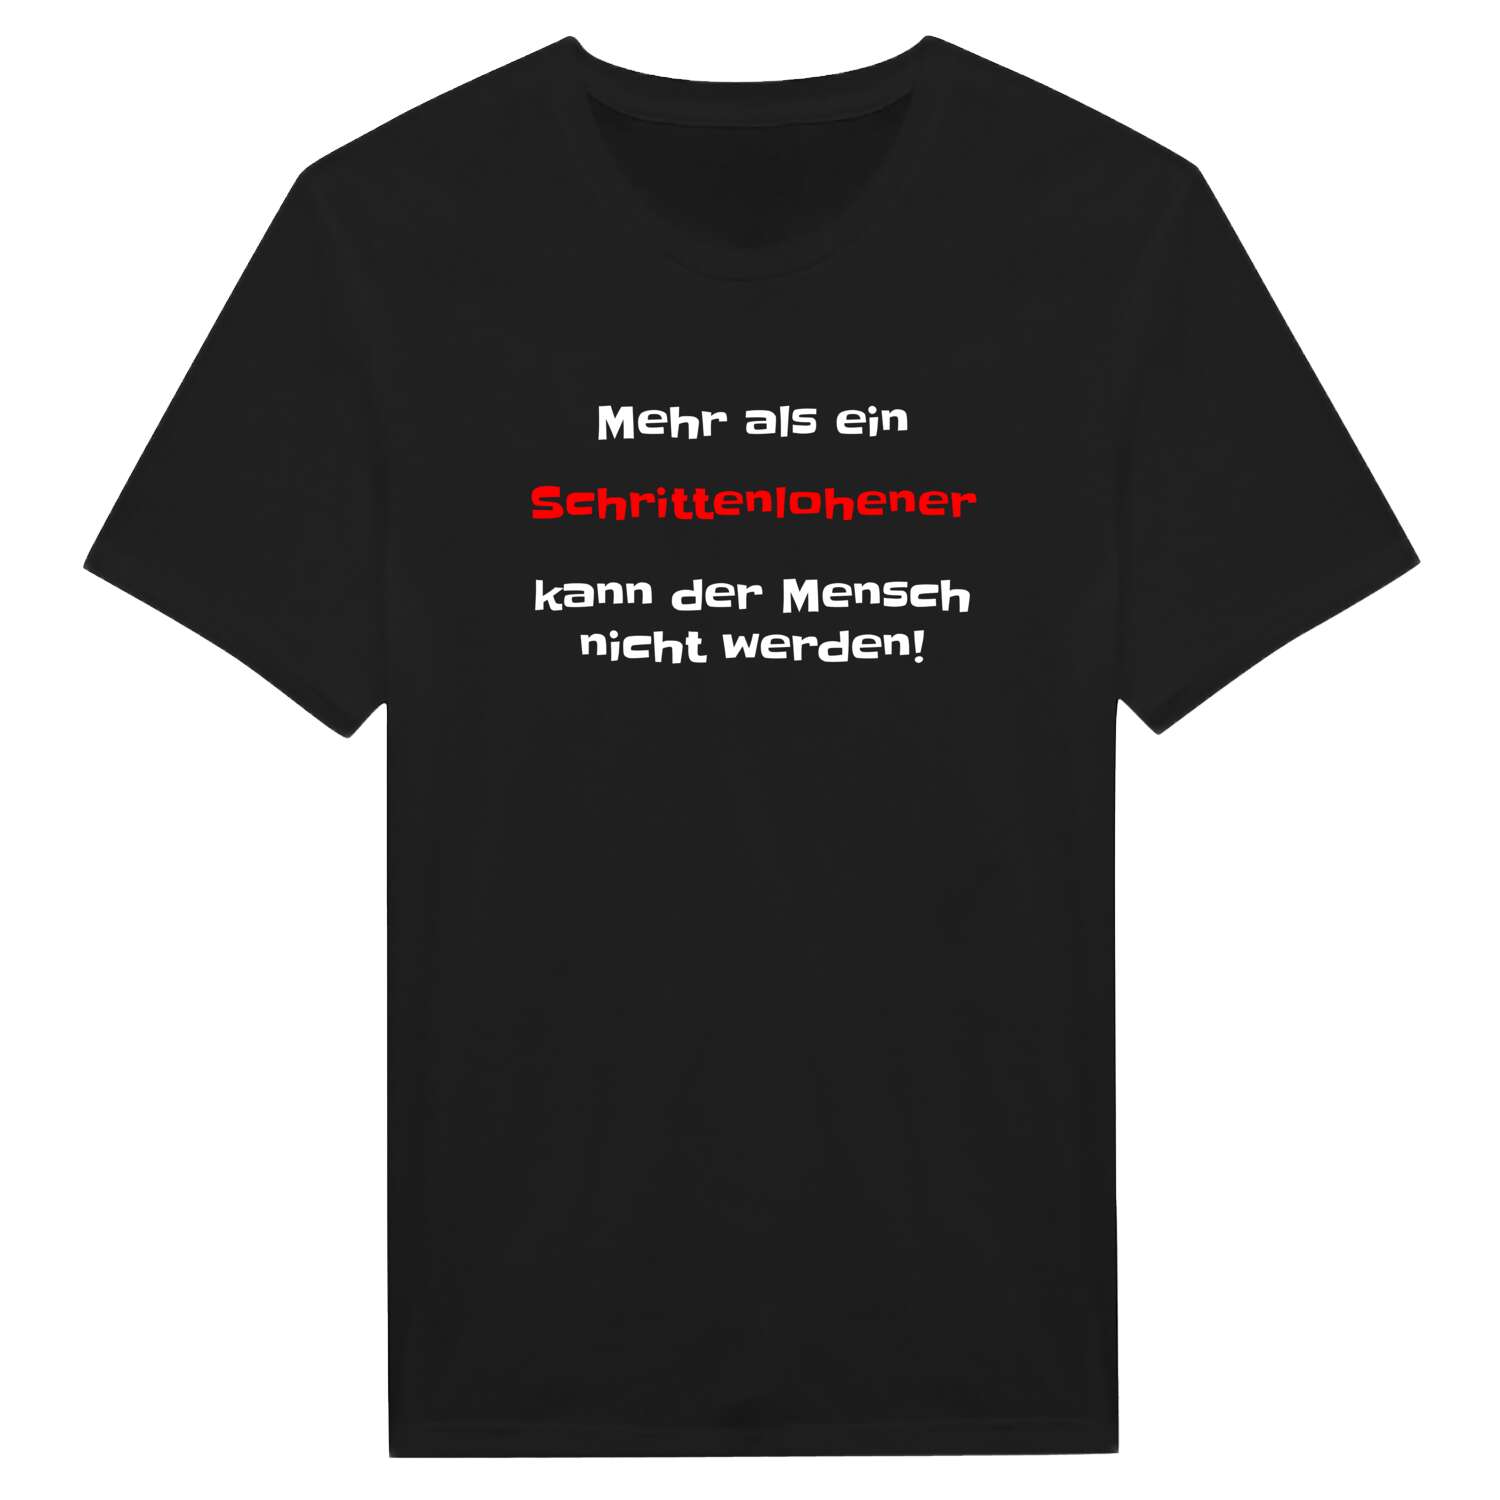 Schrittenlohe T-Shirt »Mehr als ein«